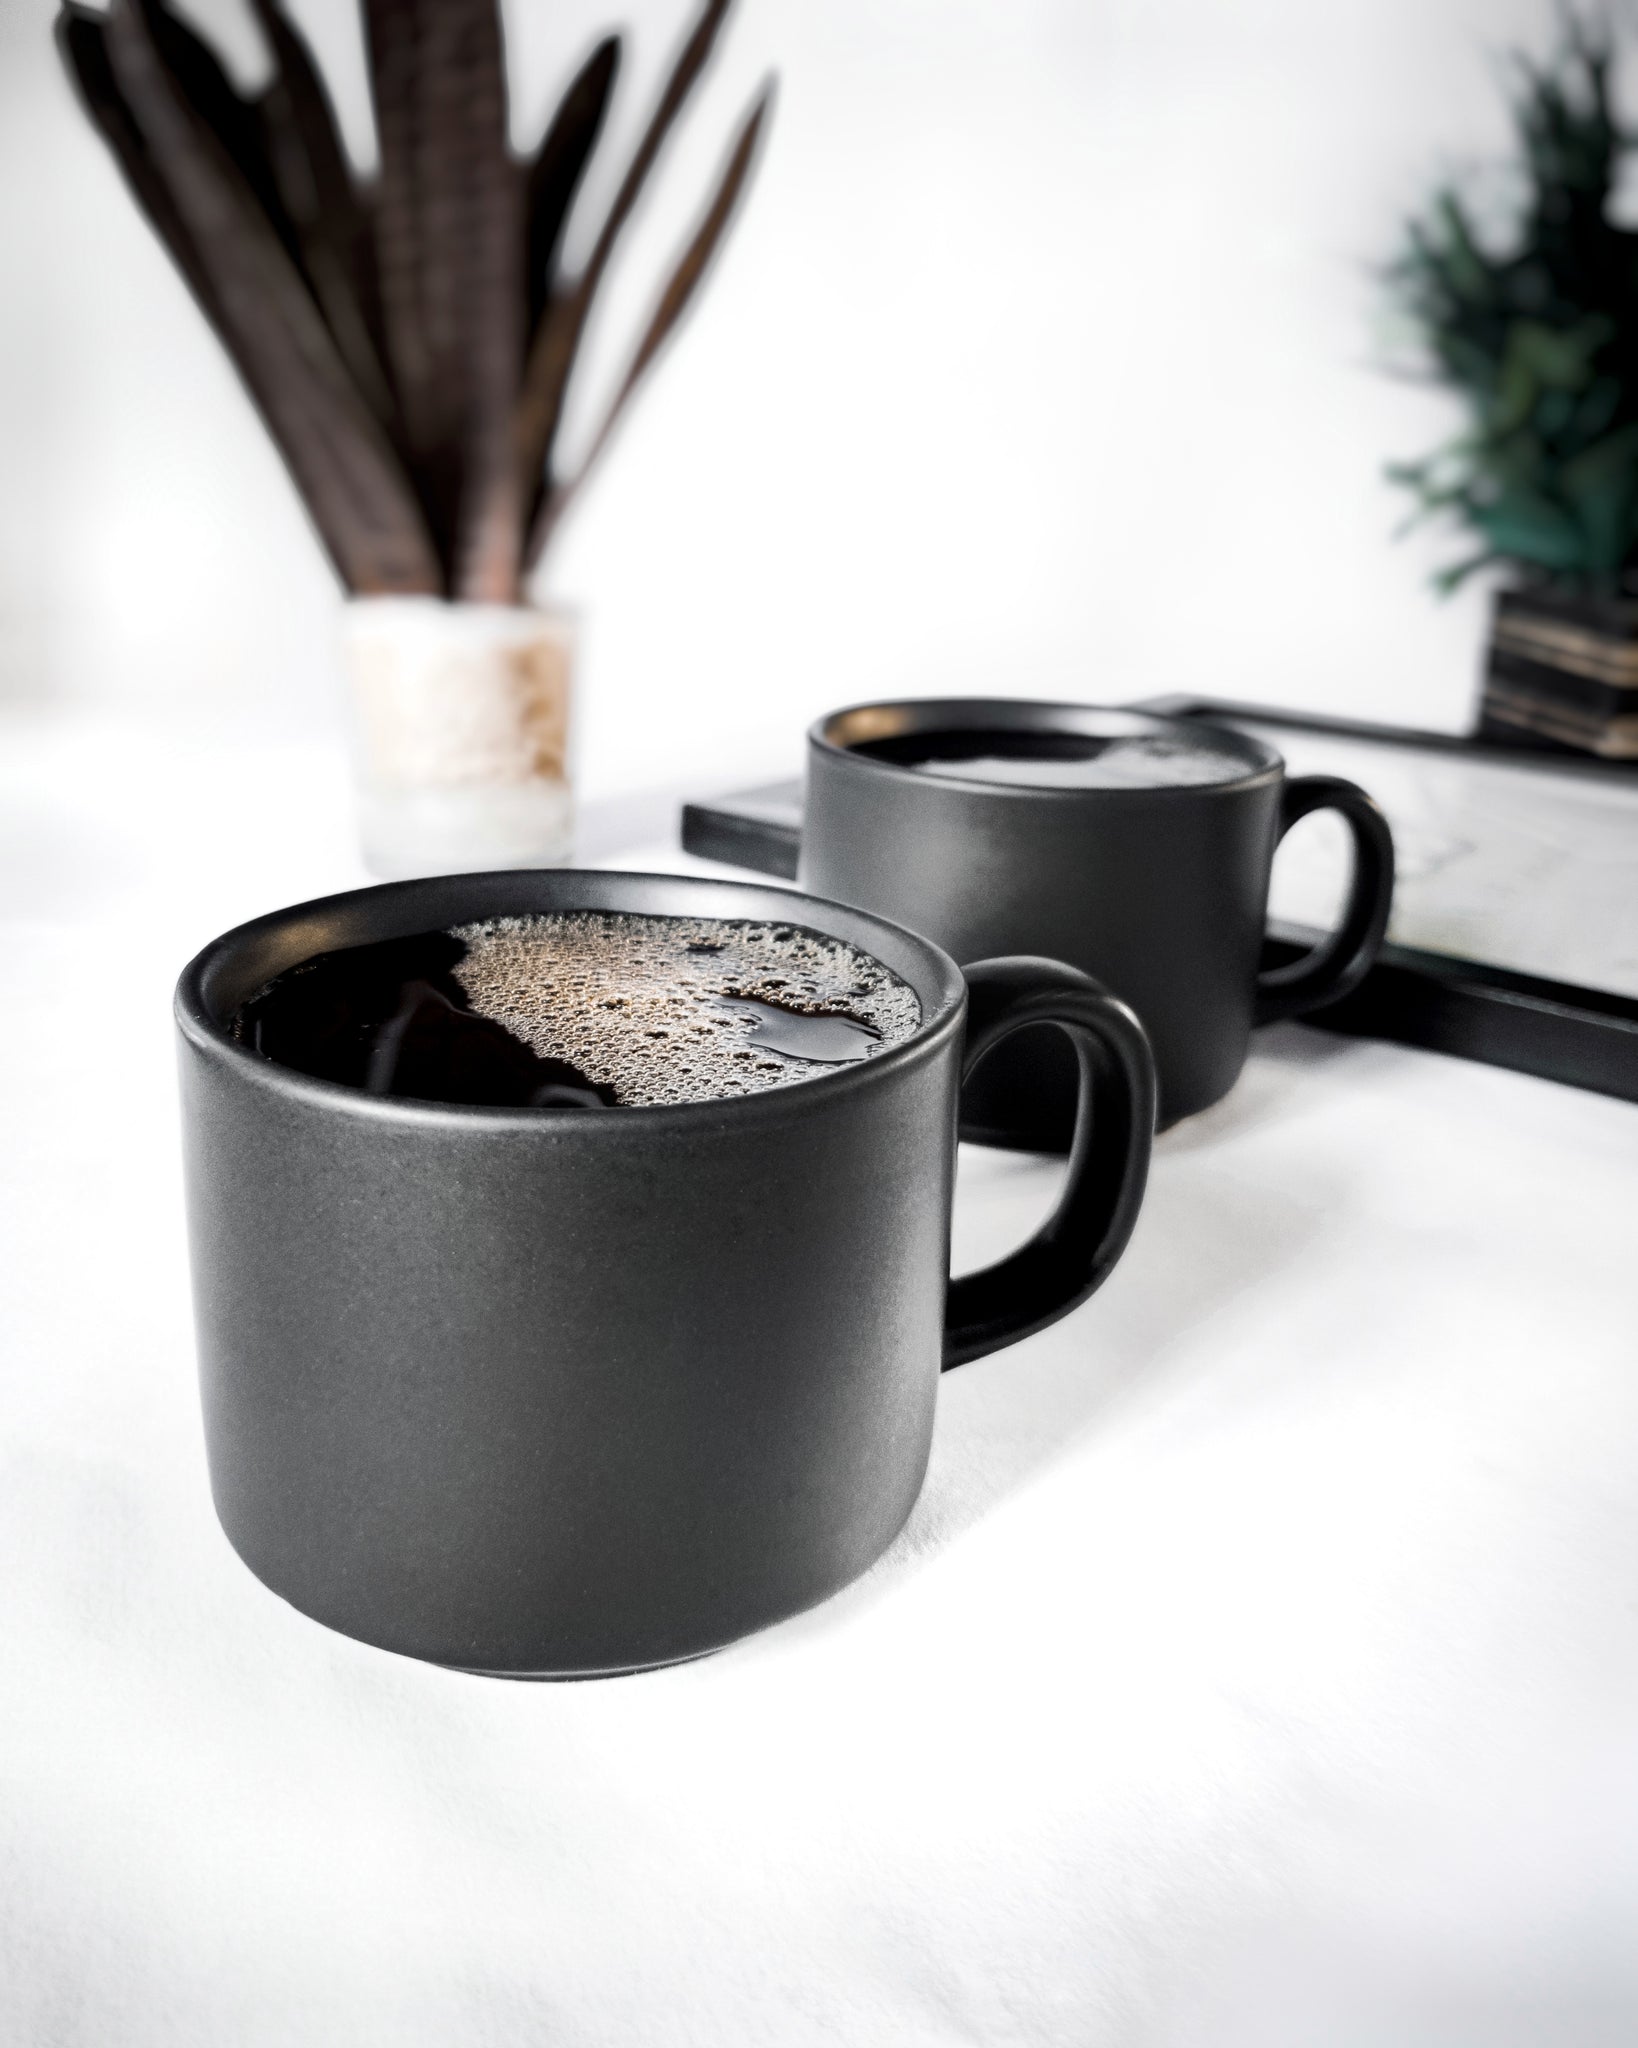 Zeta Matte Black Espresso Cup Set